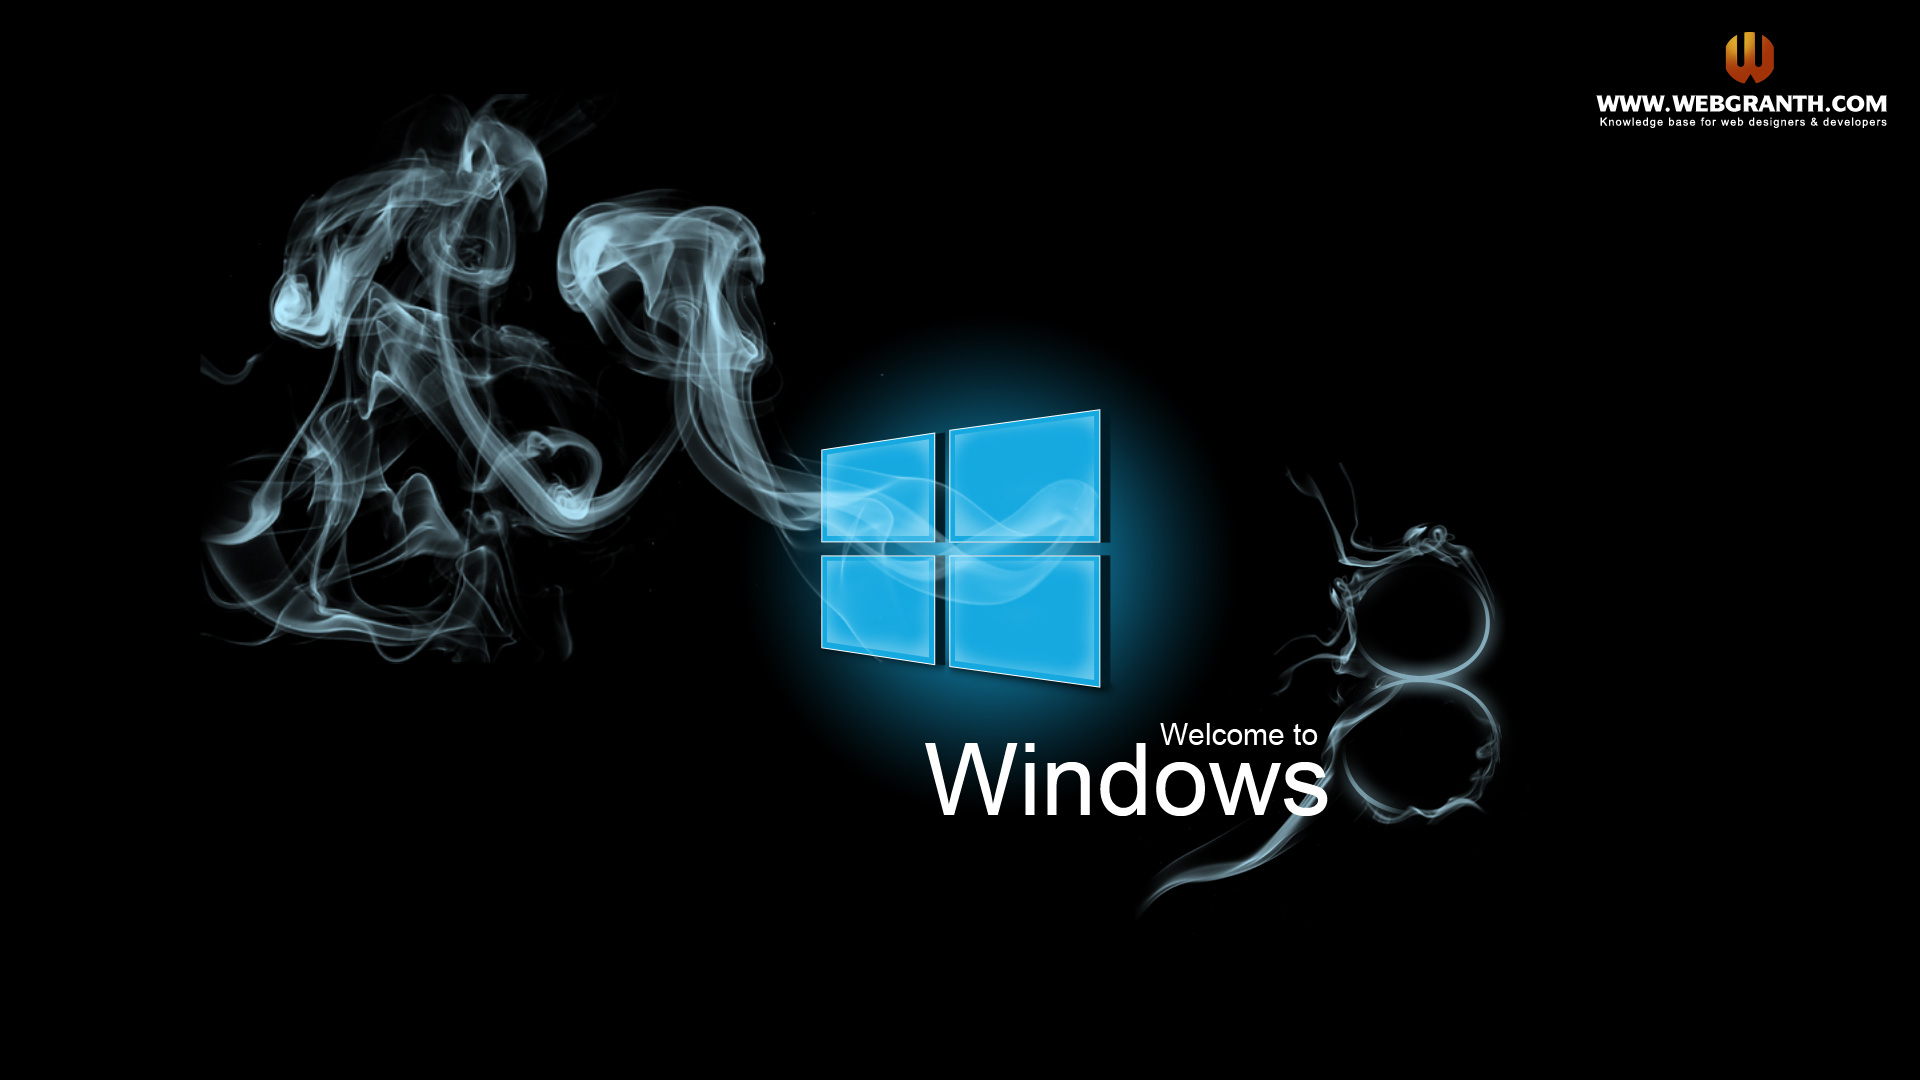  Windows 8 Wallpaper Backgrounds 2jpg 1920x1080